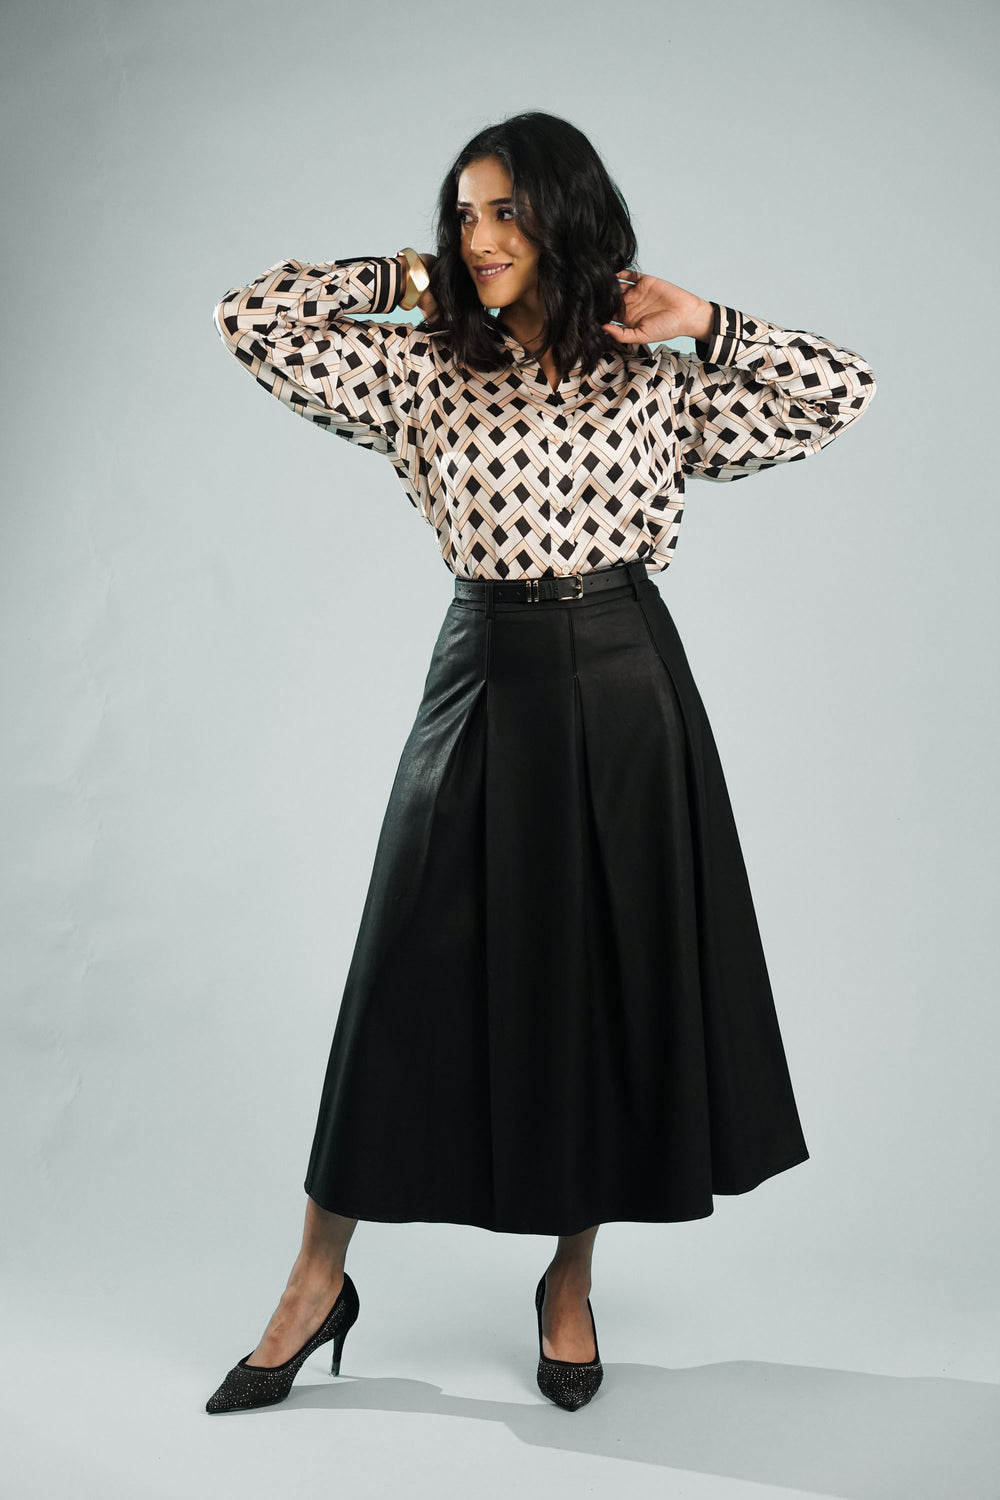 Grace box pleated skirt: women's formal wear